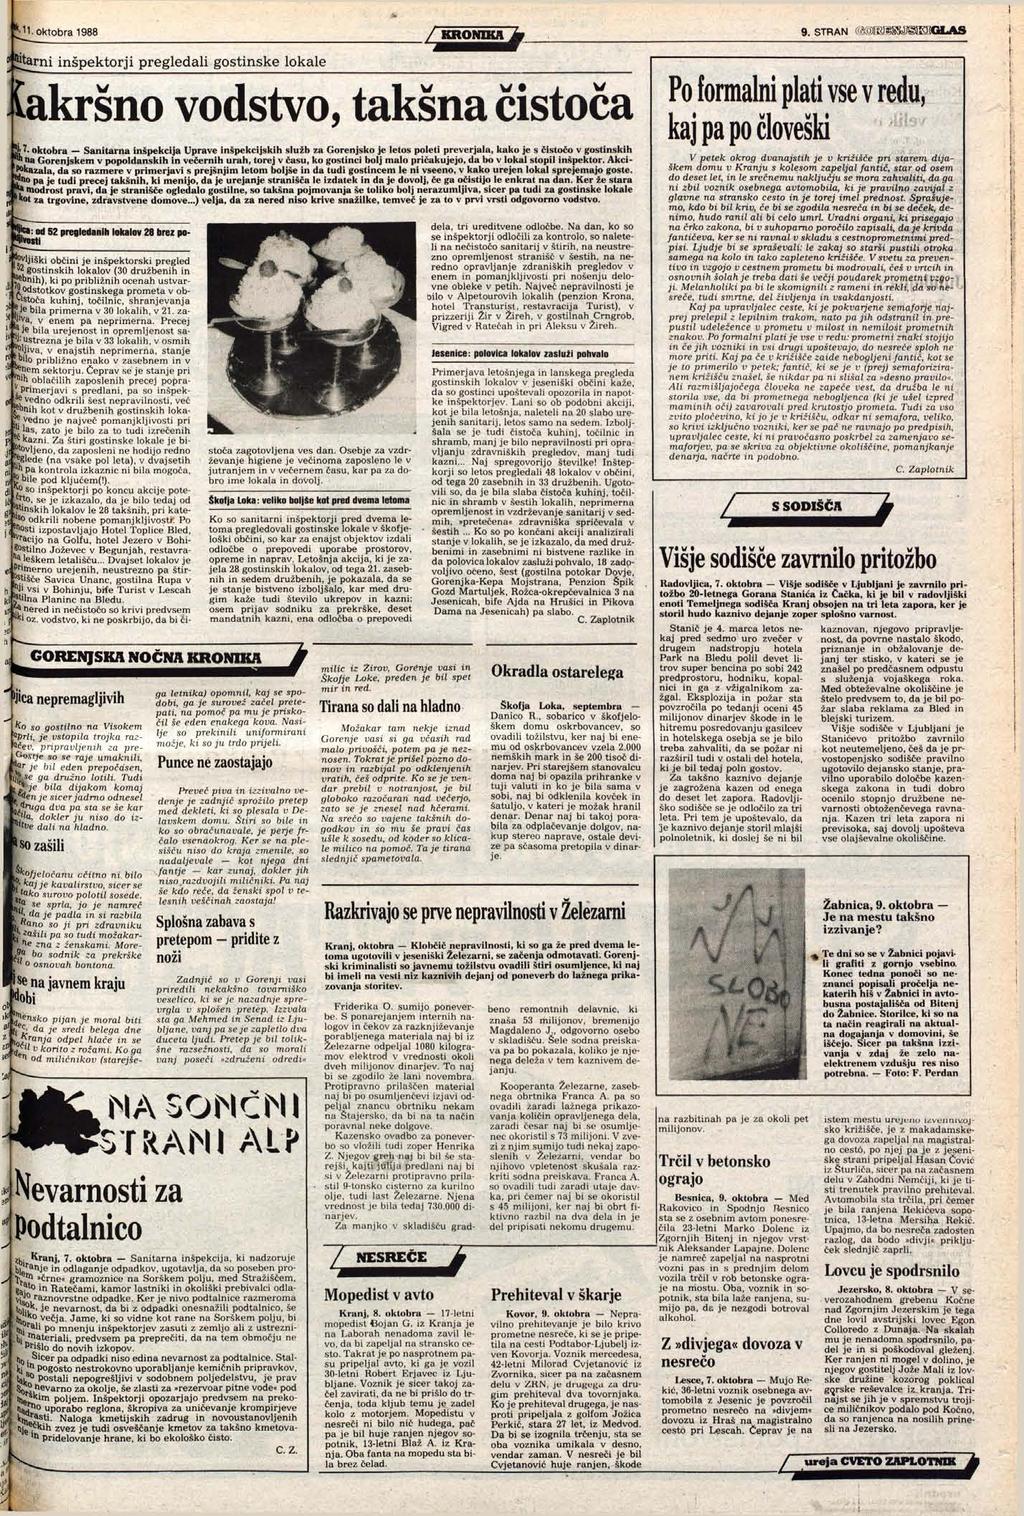 oktobra 1988 / KRONIKA 9. STRAN mmm$smola& flotami inšpektorji pregledali gostinske lokale Cakršno vodstvo, takšna čistoča Jj' 7.